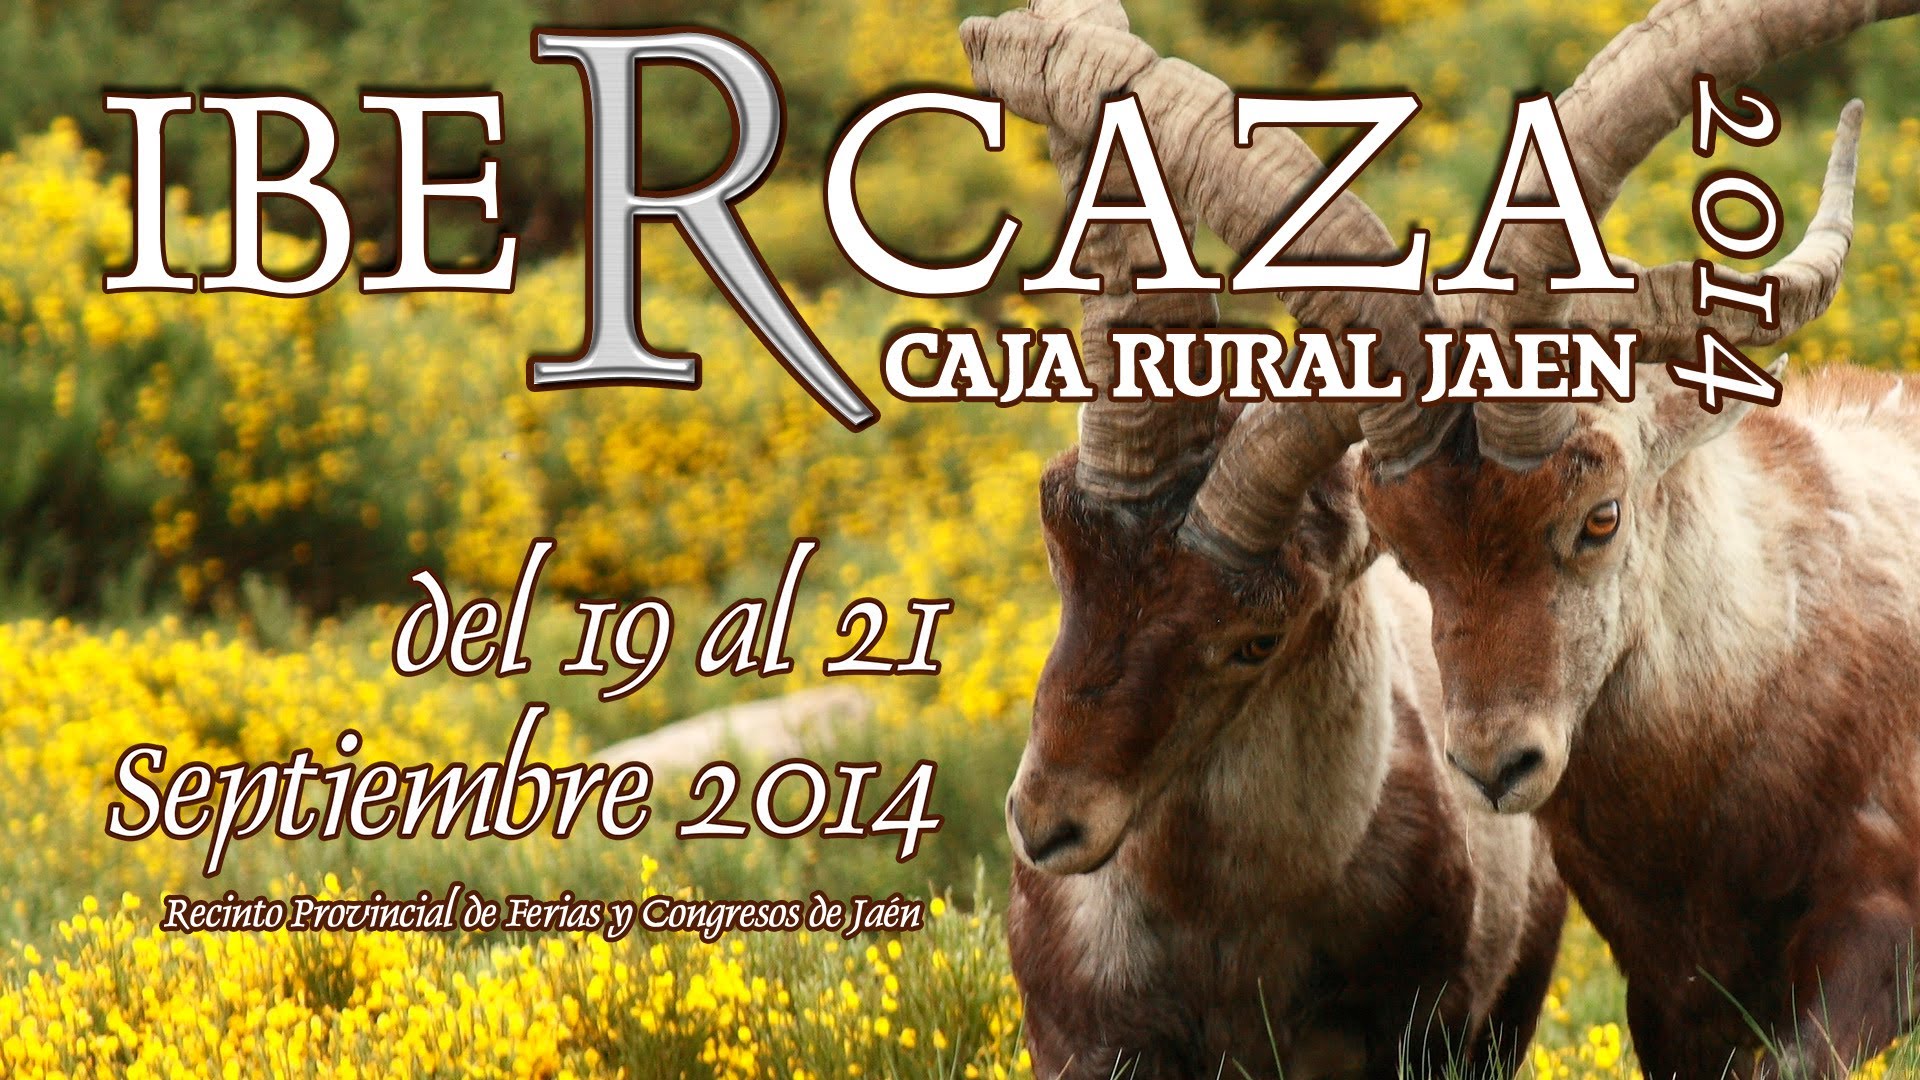 venta entradas online Ibercaza 2014